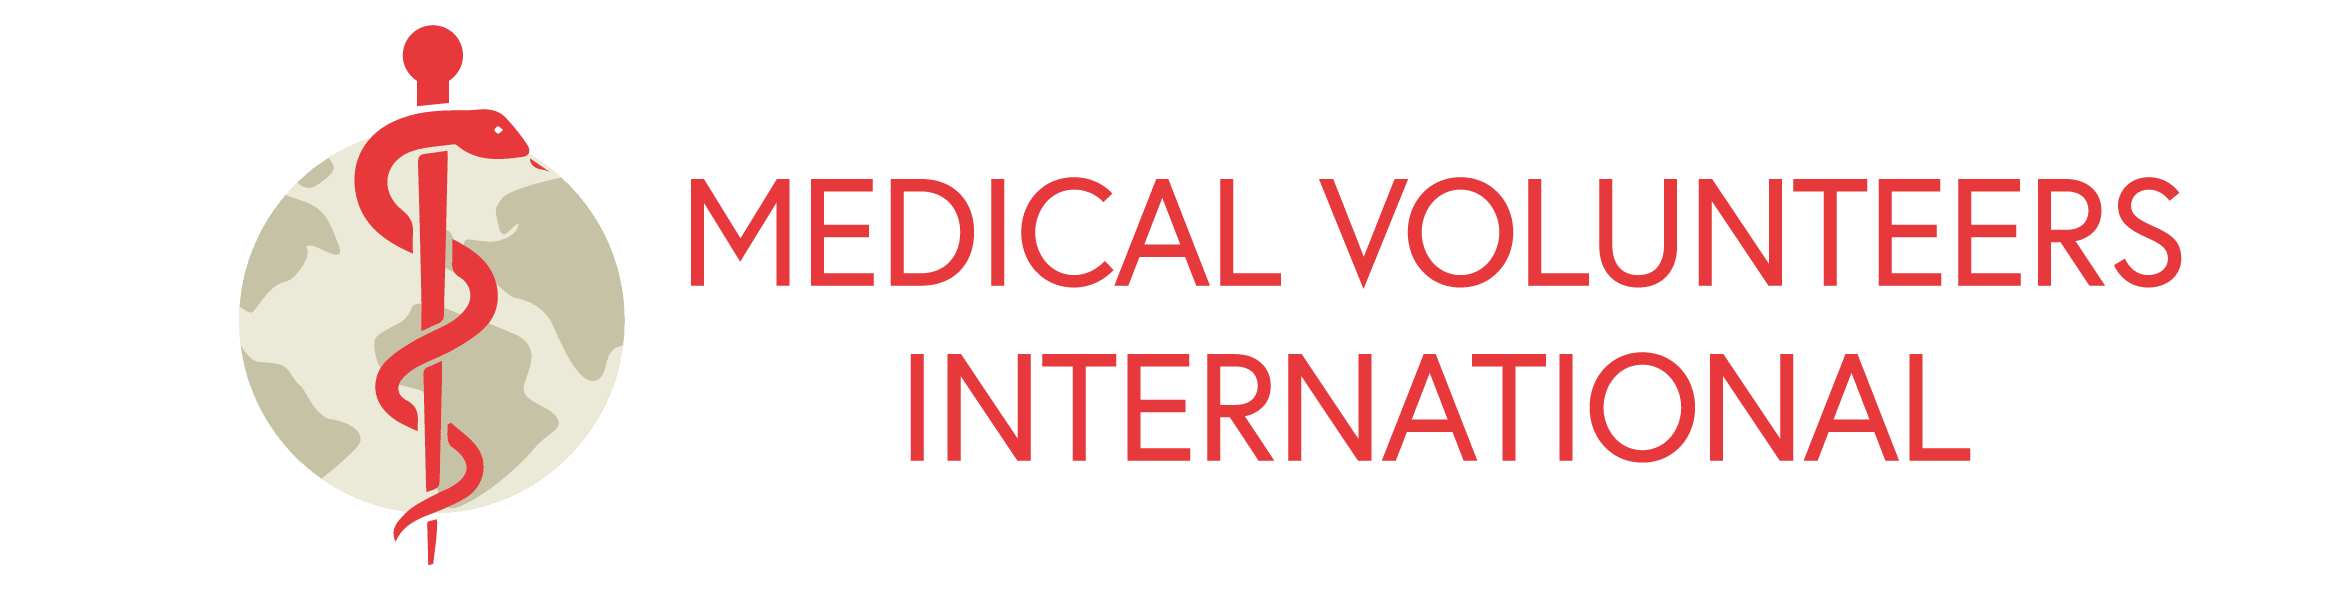 Medical Volunteers International-logo